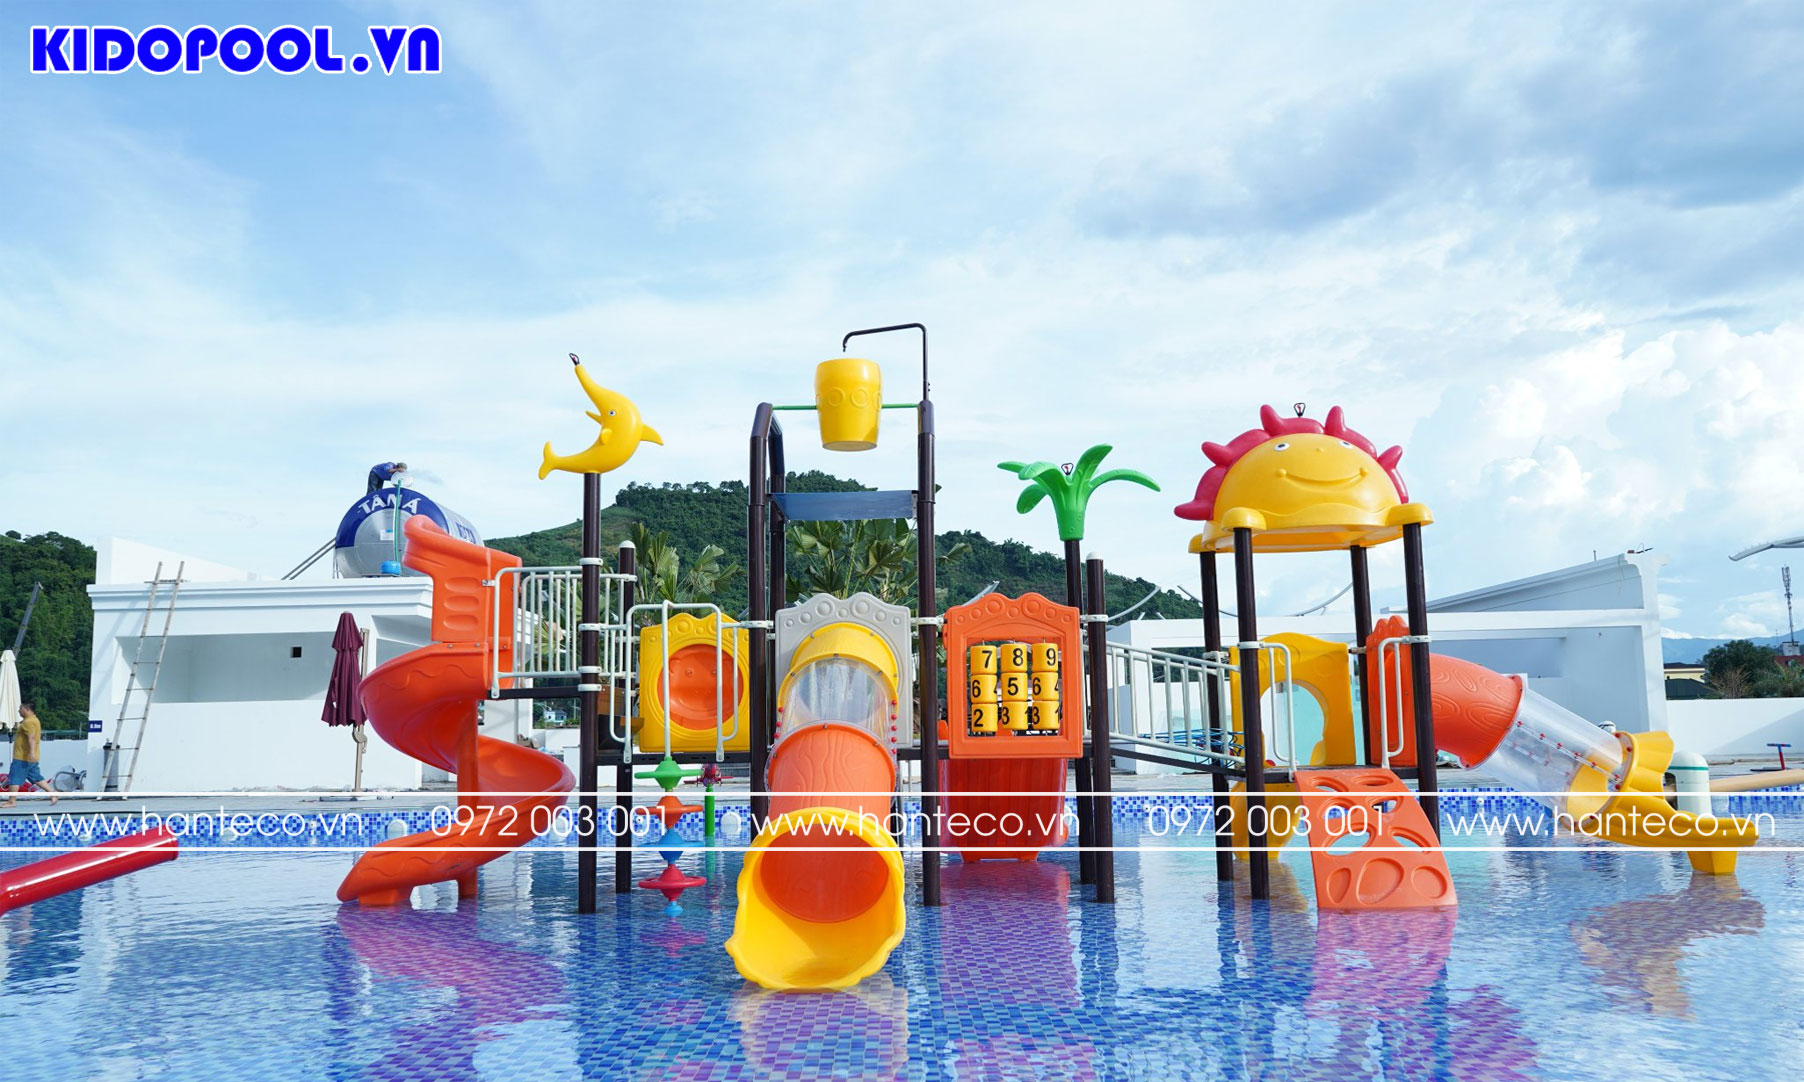 Hoàn thiện bể bơi Aqua Pool - Picenza Sơn La siêu ấn tượng